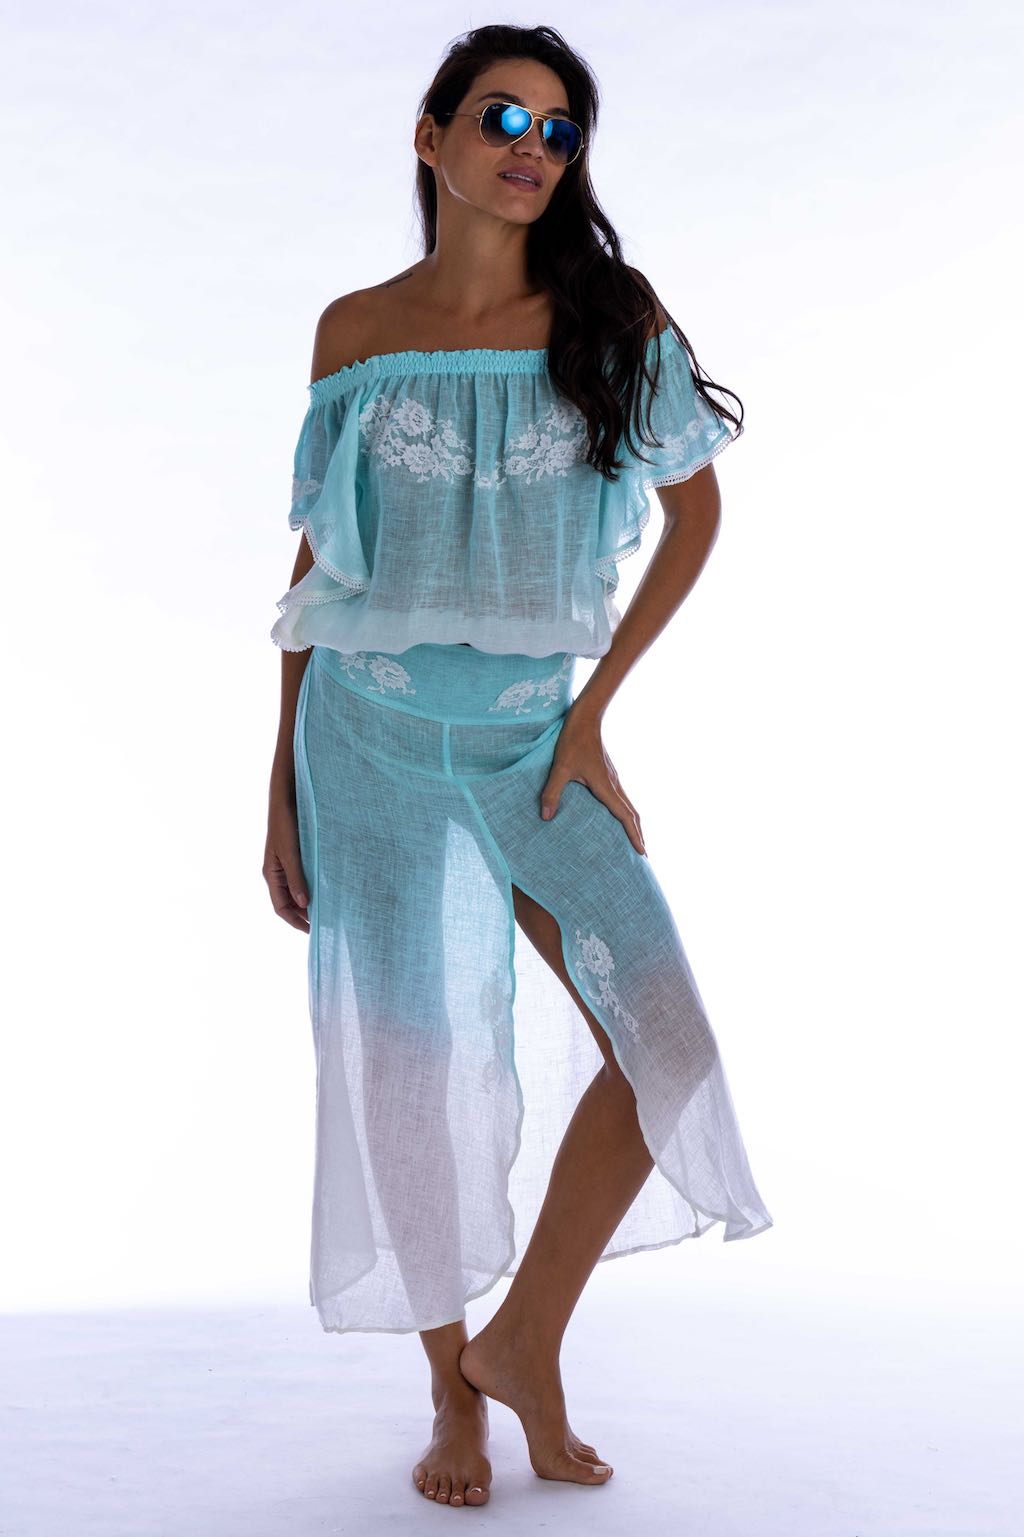 Vanita Rosa  Long Skirt Olivia - Premium Long Skirts from Vanita Rosa - Just $430! Shop now at Marina St Barth